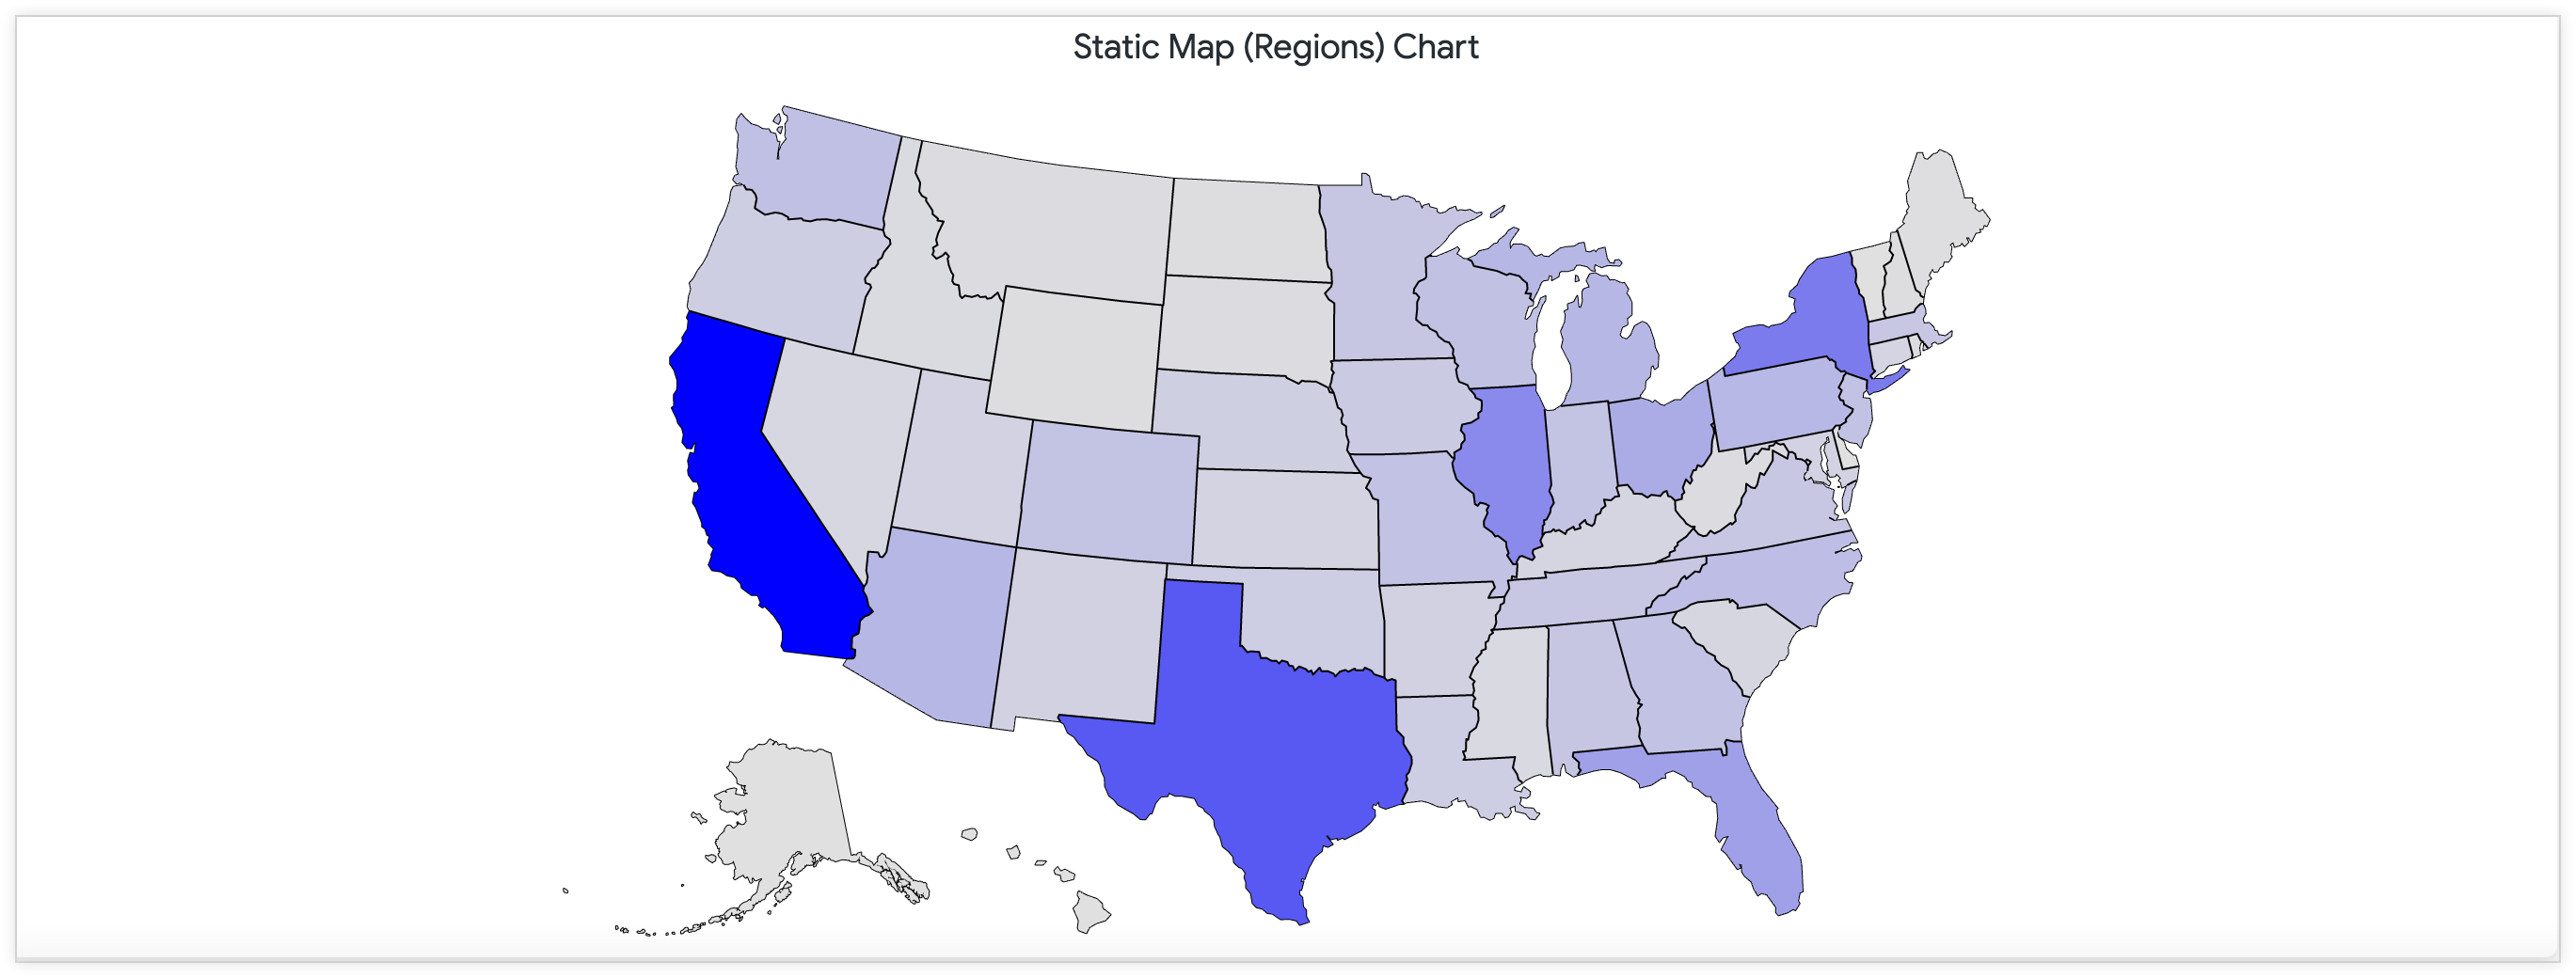 Mappa statica che mostra il numero di negozi negli Stati Uniti attraverso una tavolozza dei colori continua.